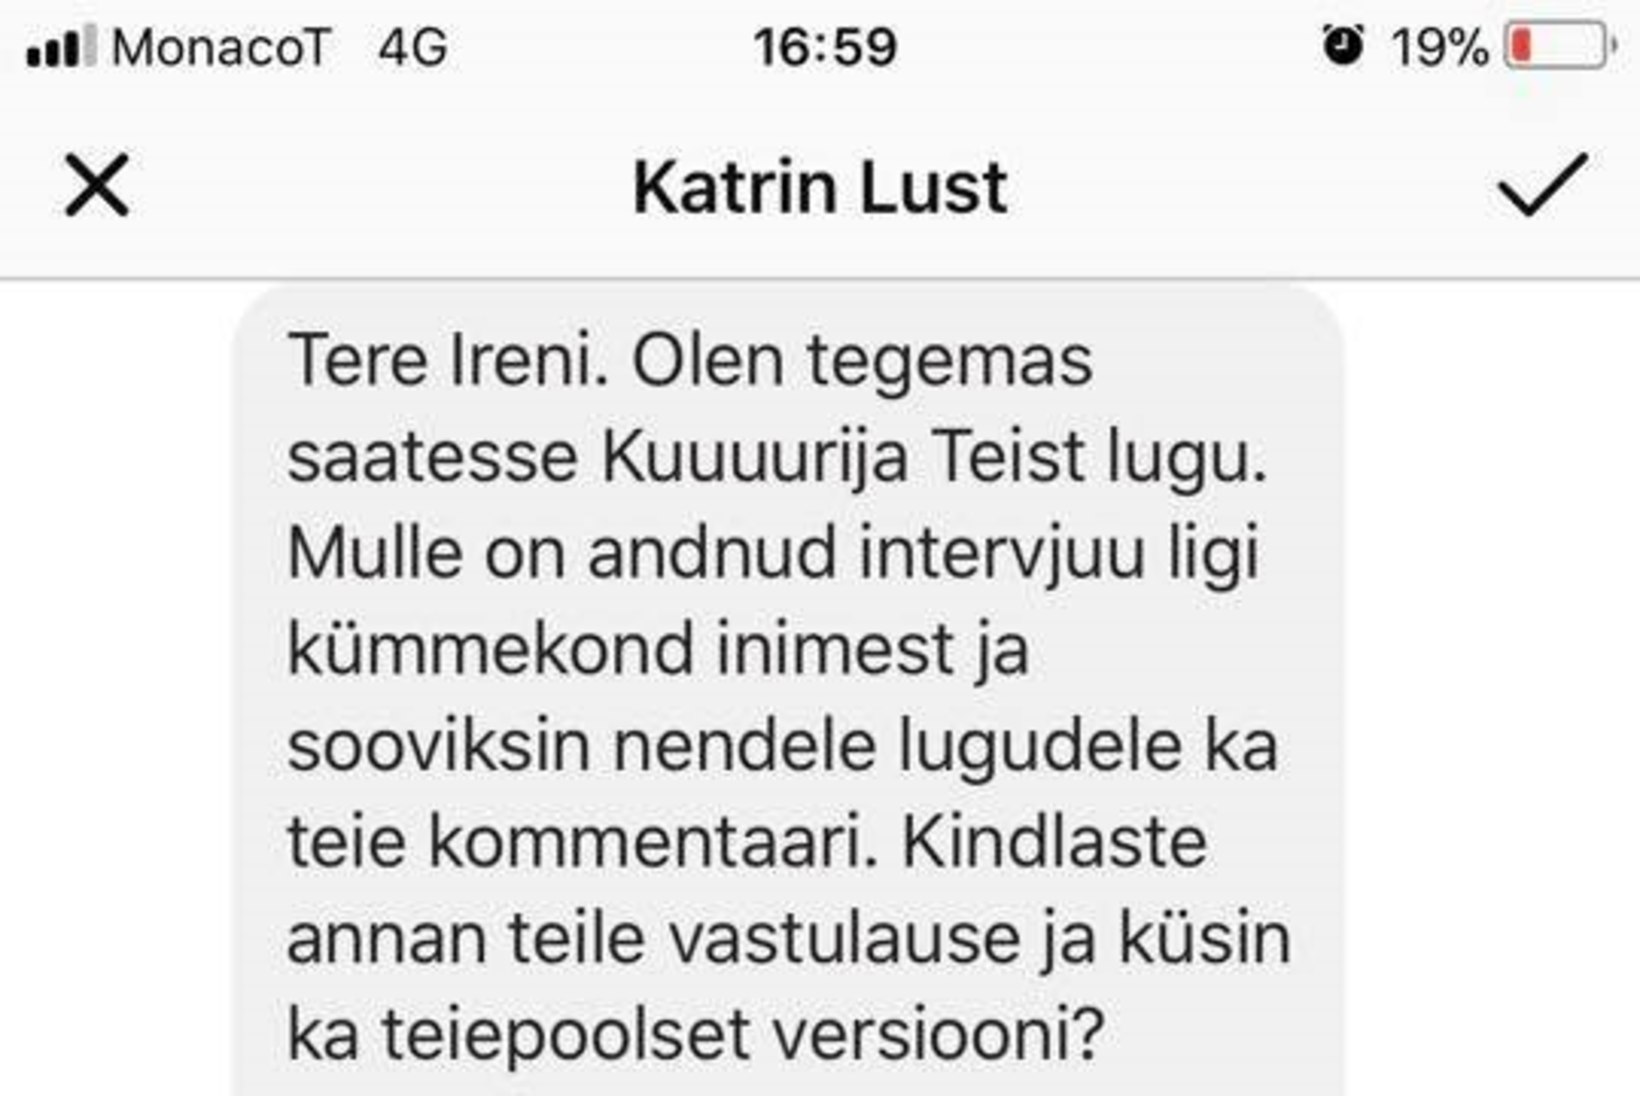 Petturist missiõpetaja ähvardab Katrin Lusti kriminaalkaristusega